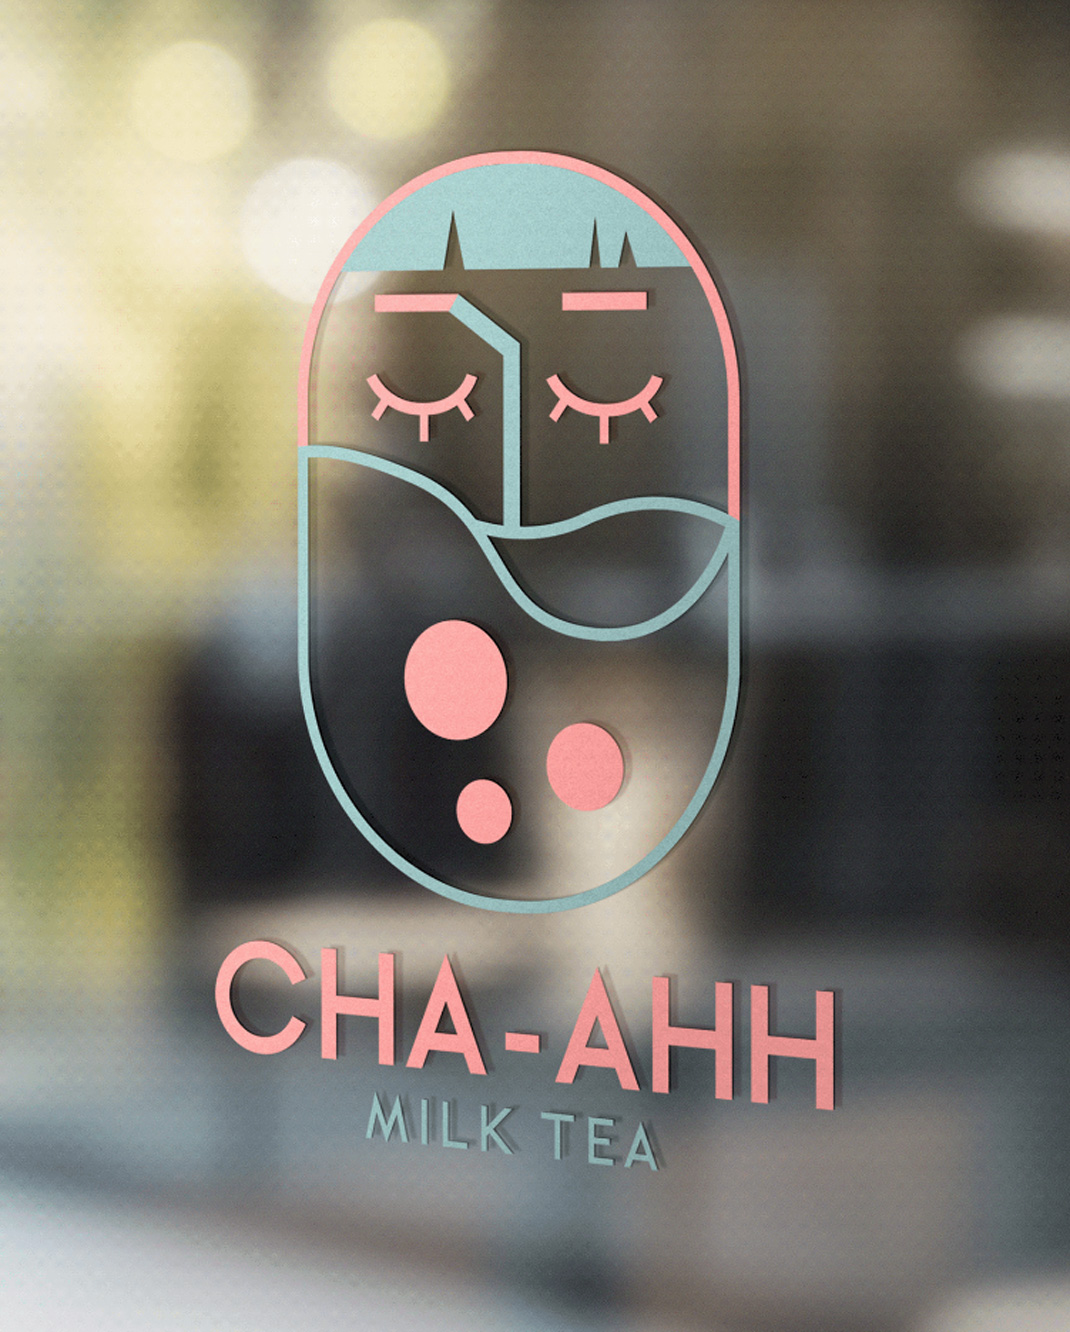 茶茶奶茶店CHA-AHH Milk Tea 菲律宾 奶茶店 插画设计 字体设计 logo设计 vi设计 空间设计